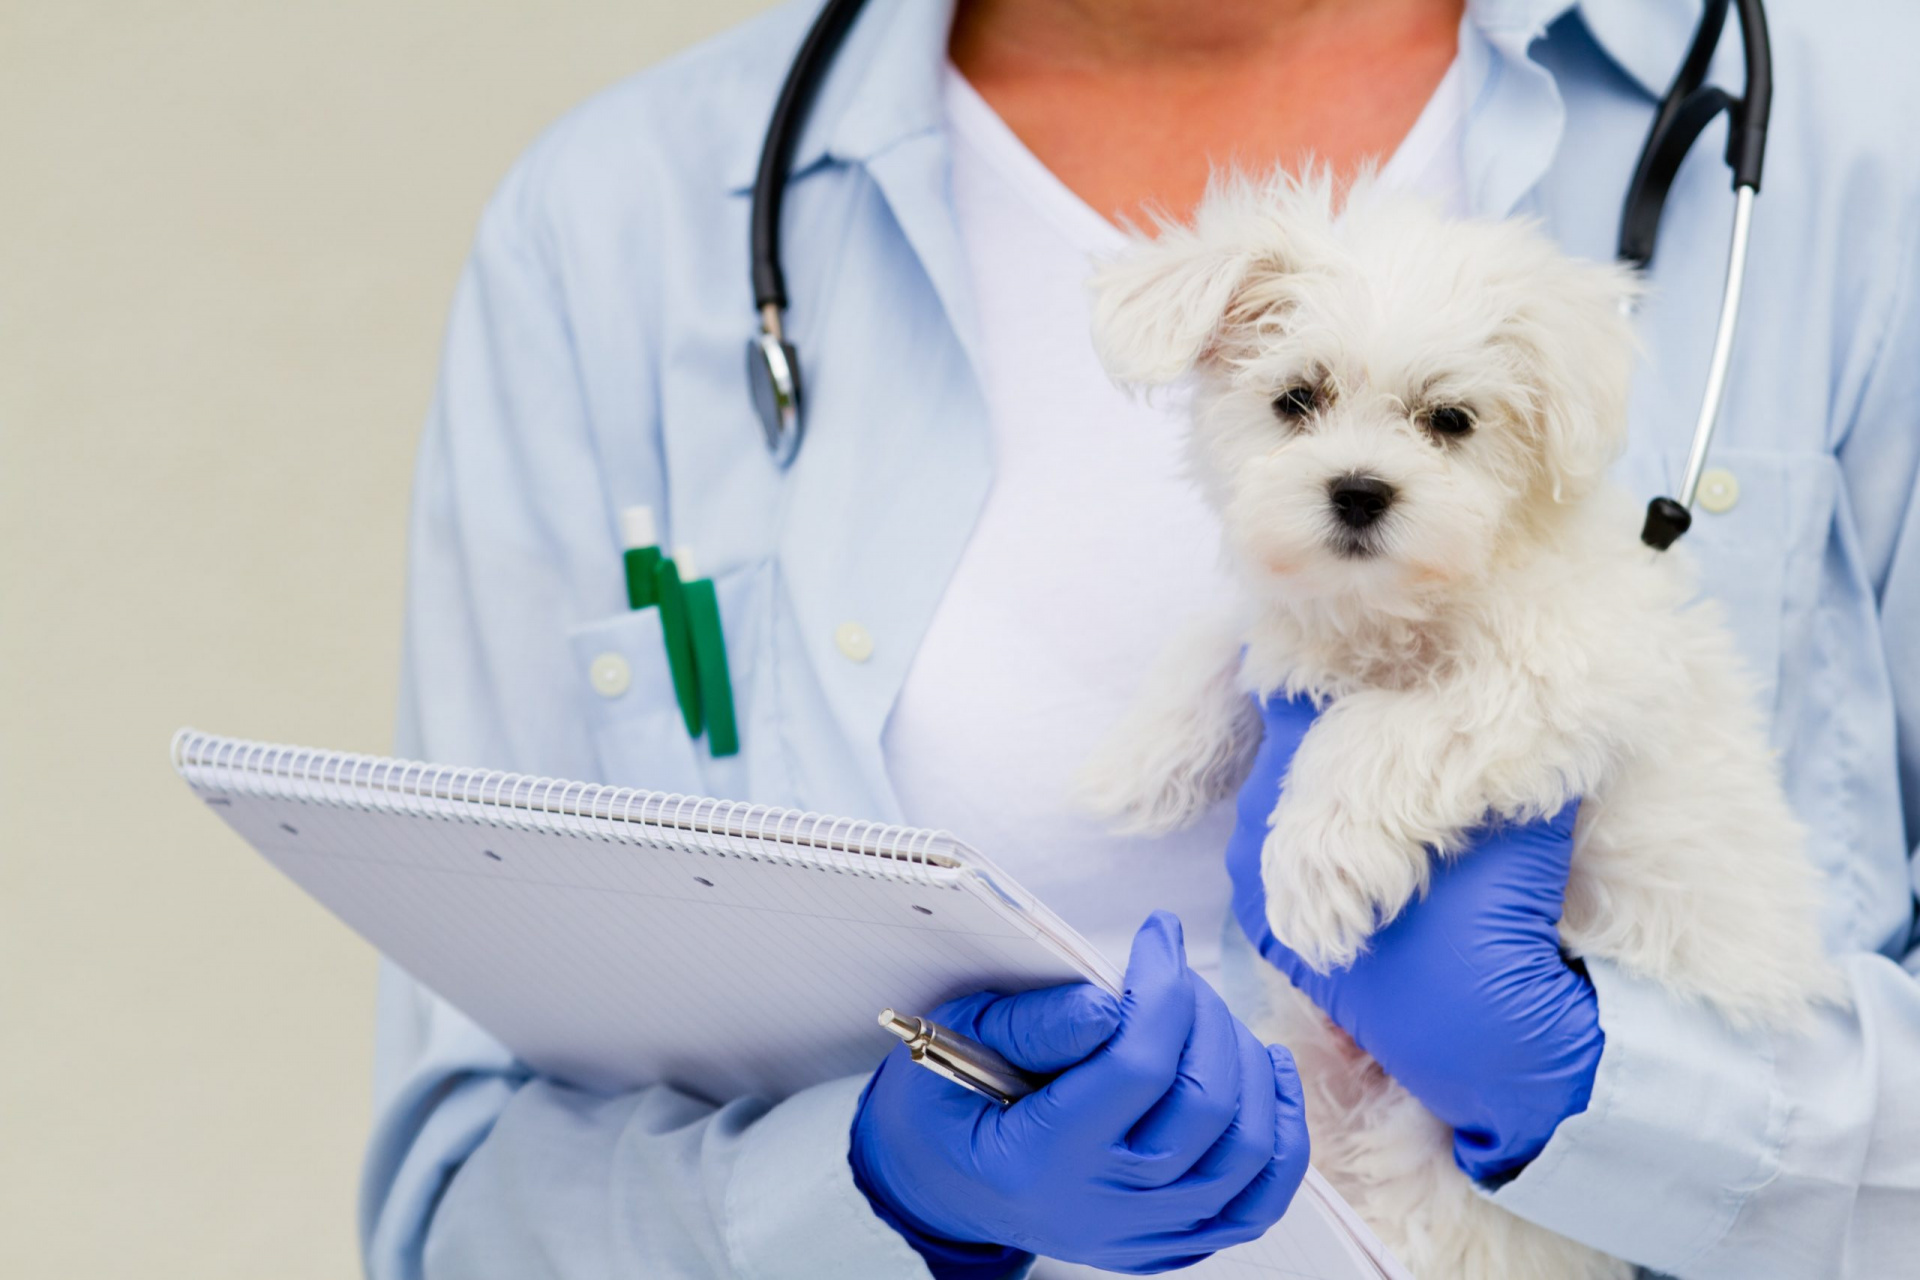 Свыше 750 обращений зарегистрировано ветеринарной поликлиникой "Добровет" в июне текущего года